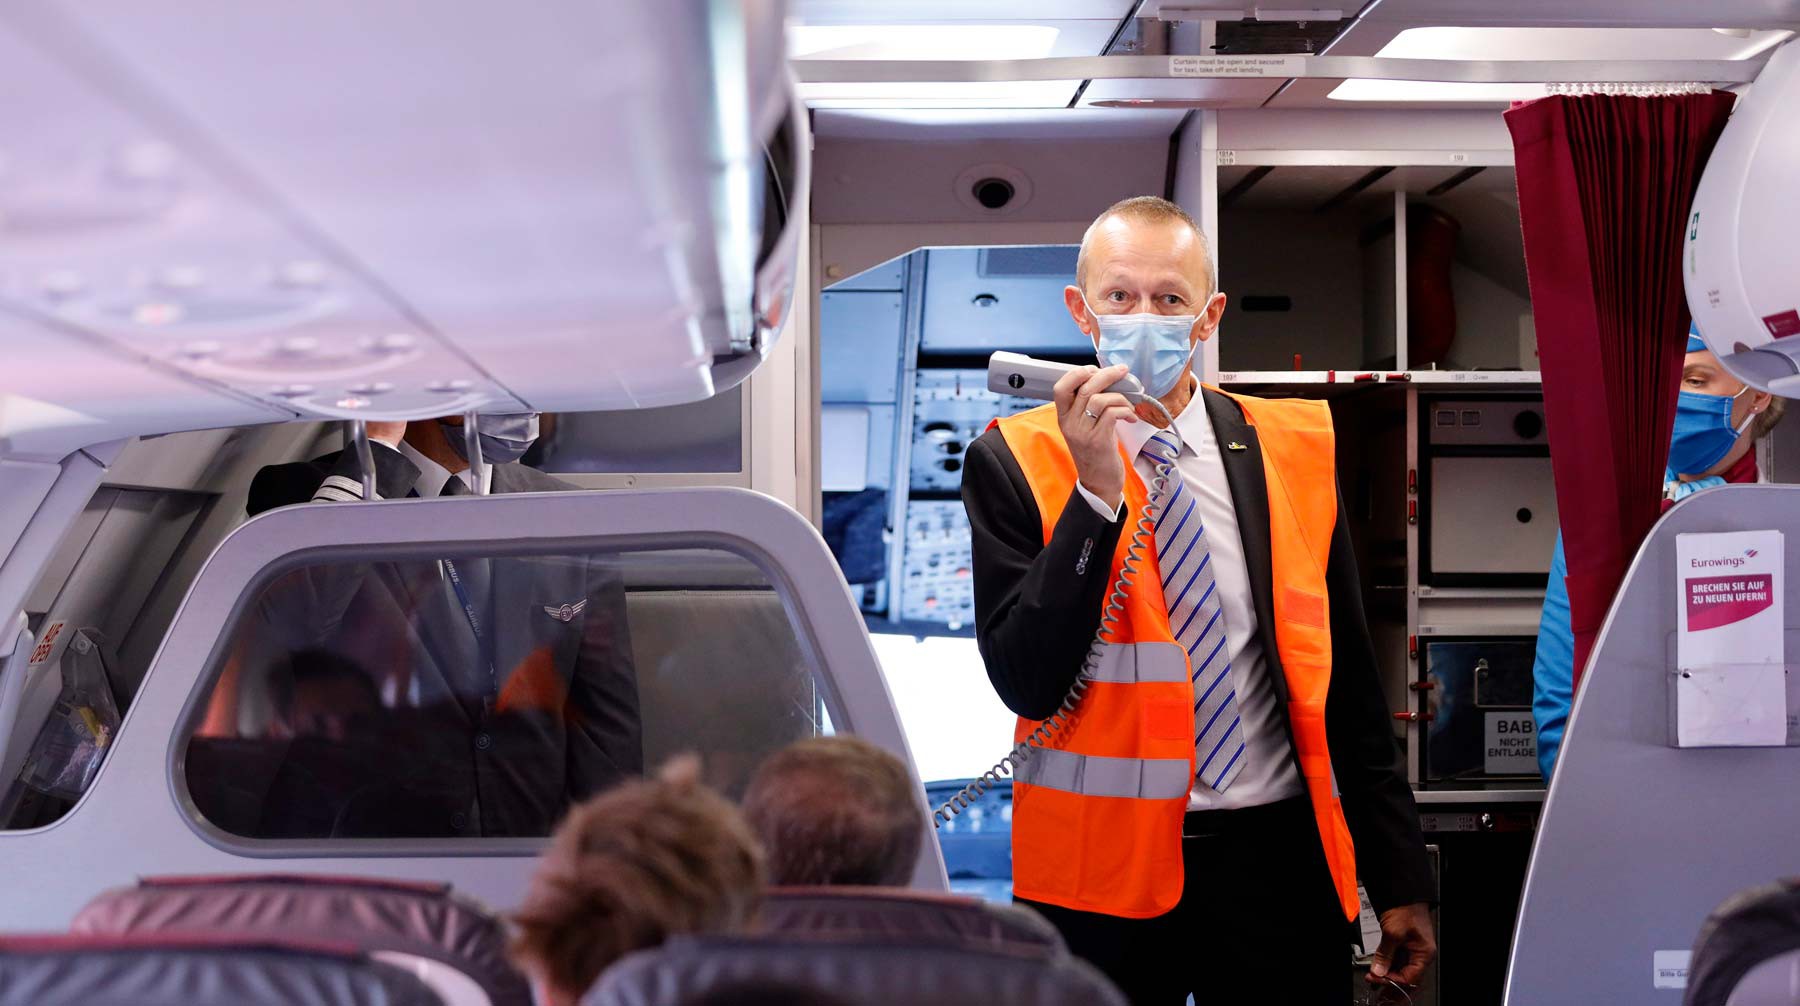 Dailystorm - Главное — не снимать маску: вирусологи посоветовали, как не заразиться COVID-19 в самолете